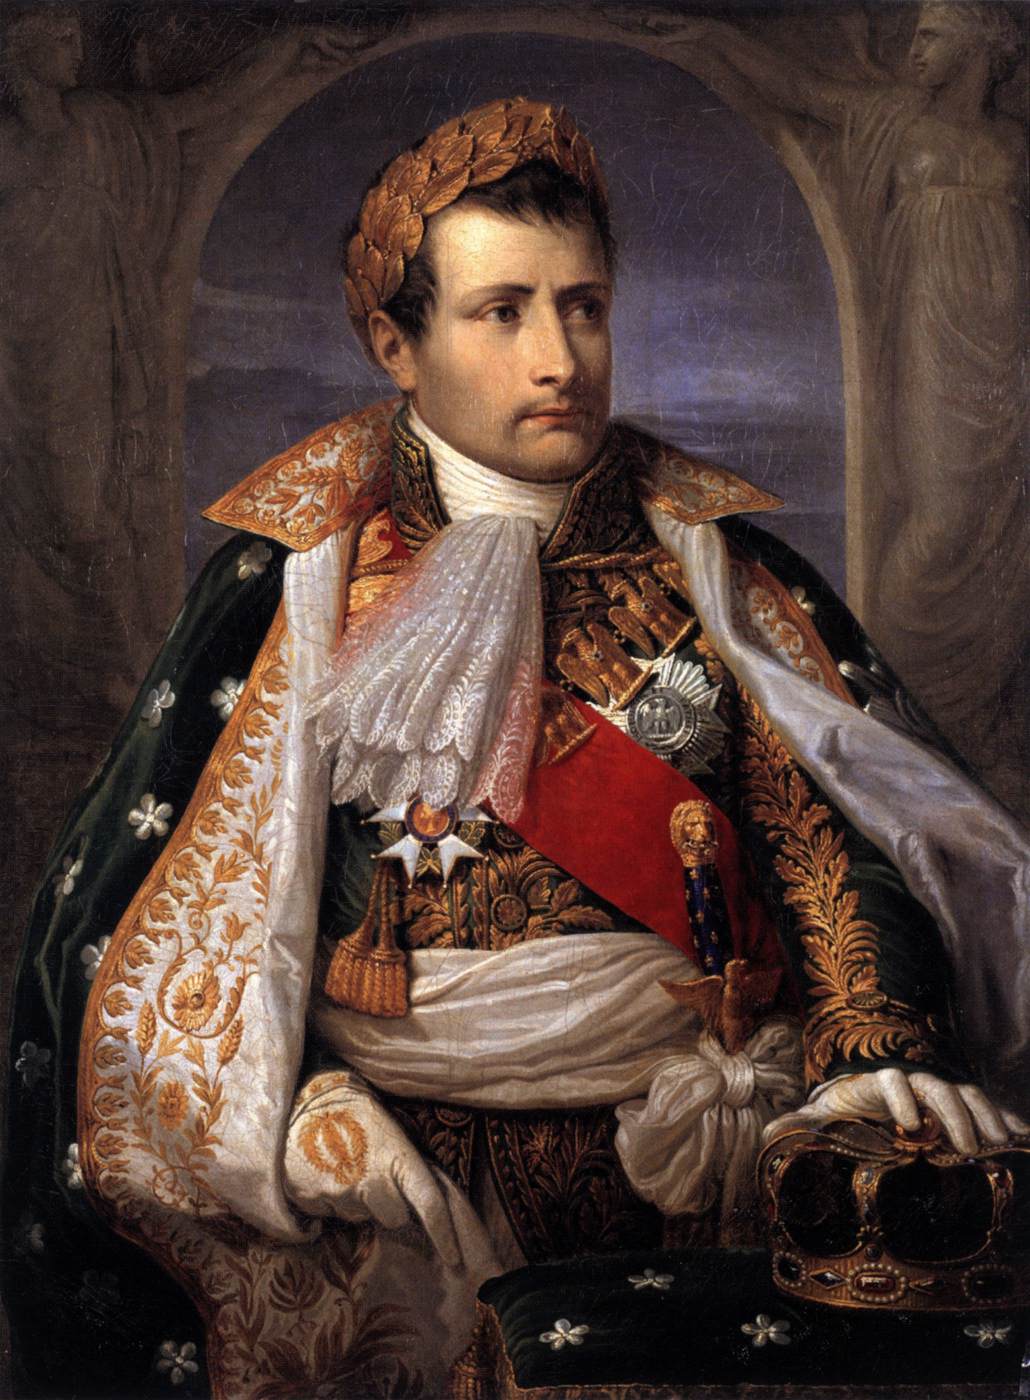 Portrait de Napoléon, premier roi d'Italie